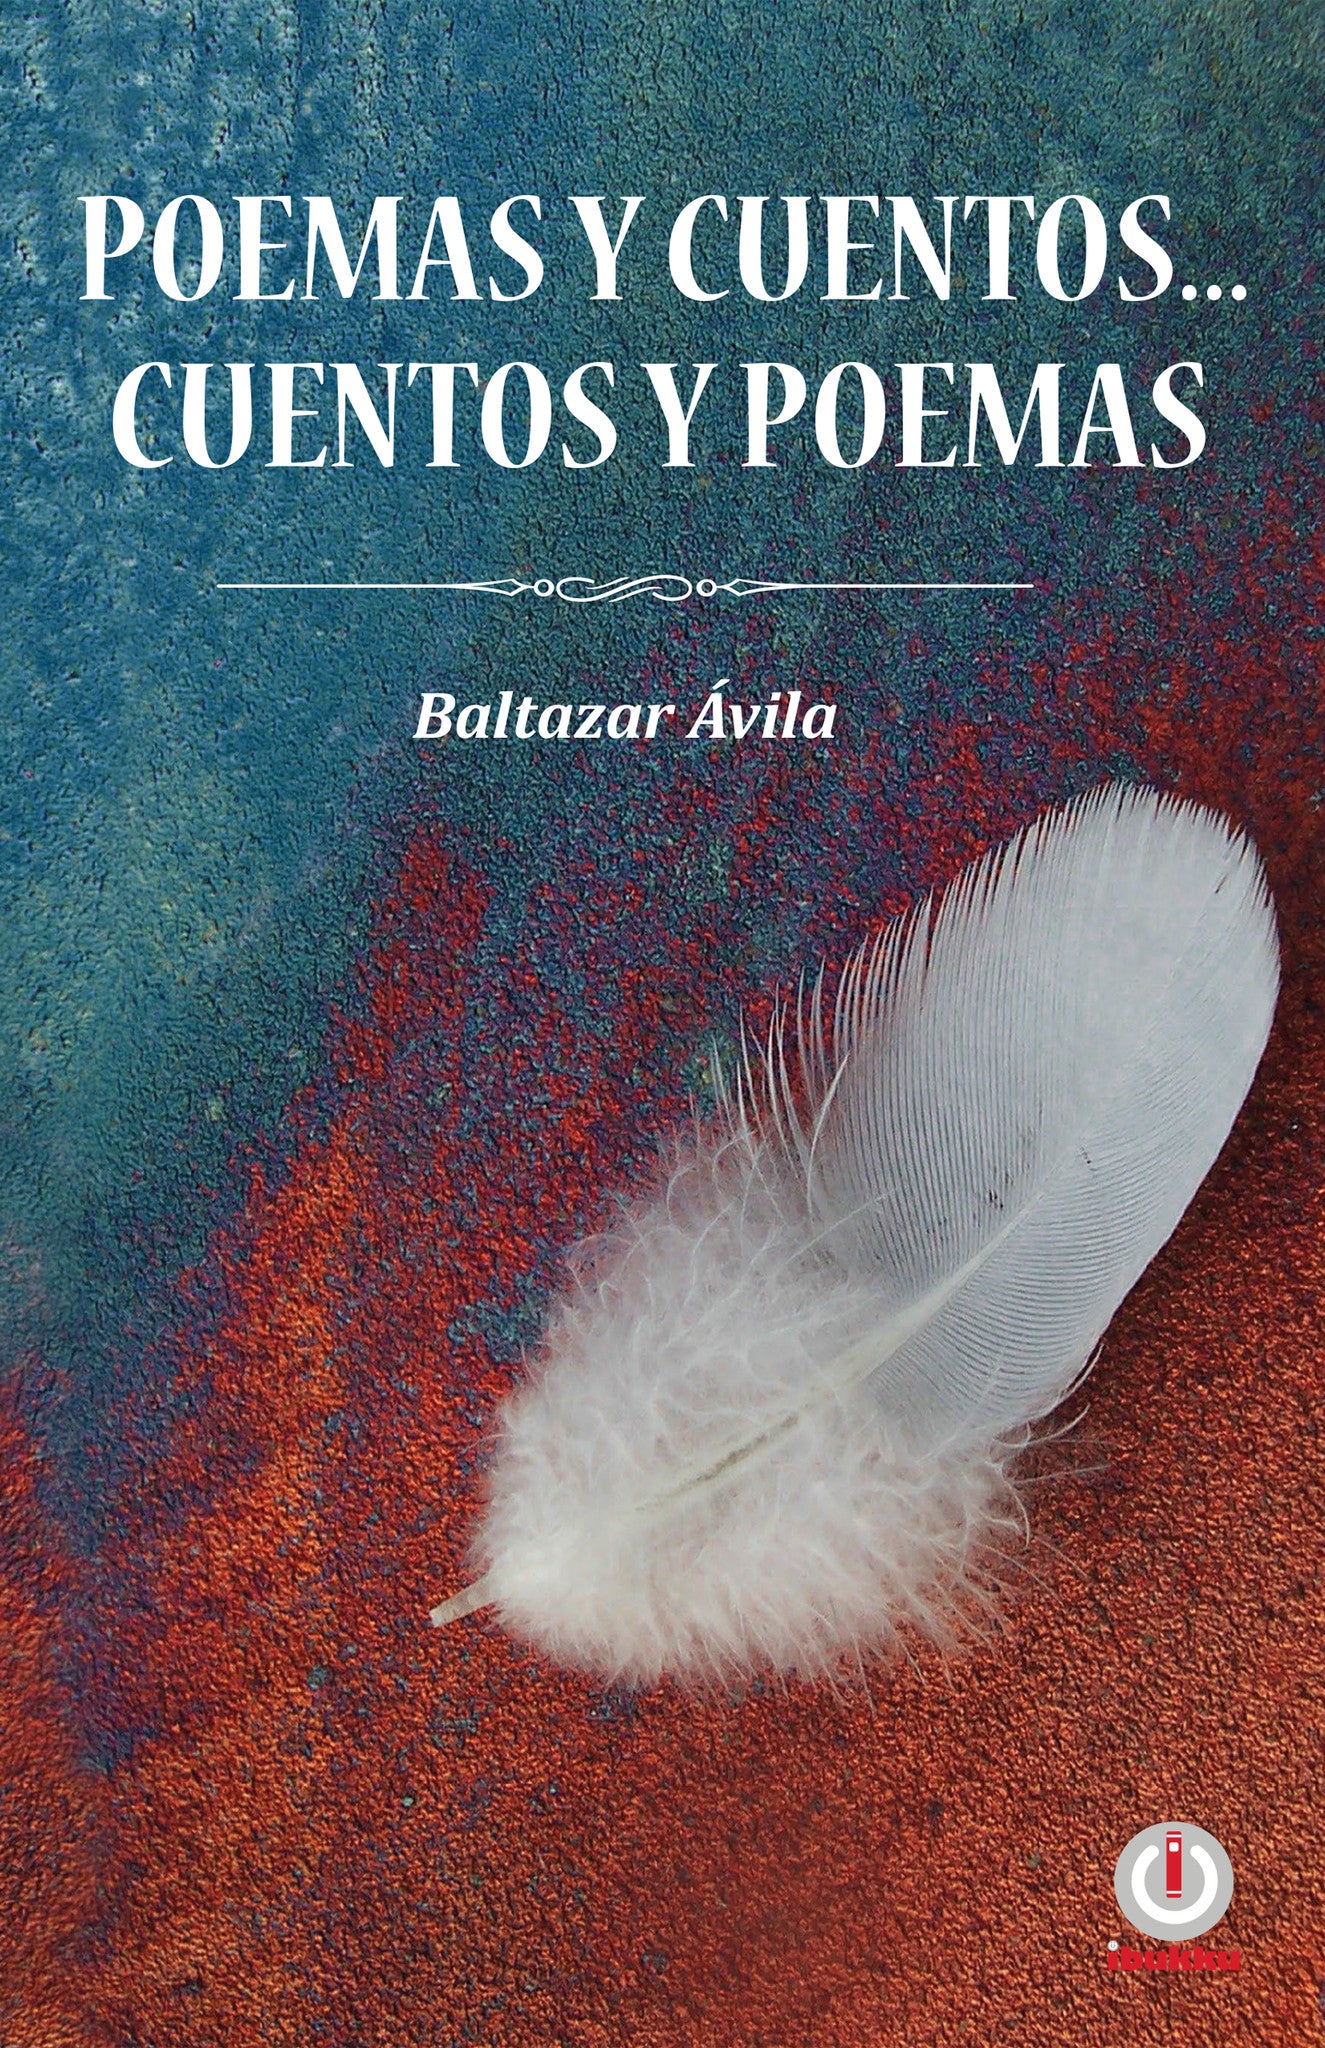 Poemas y cuentos... cuentos y poemas (Impreso) - ibukku, LLC